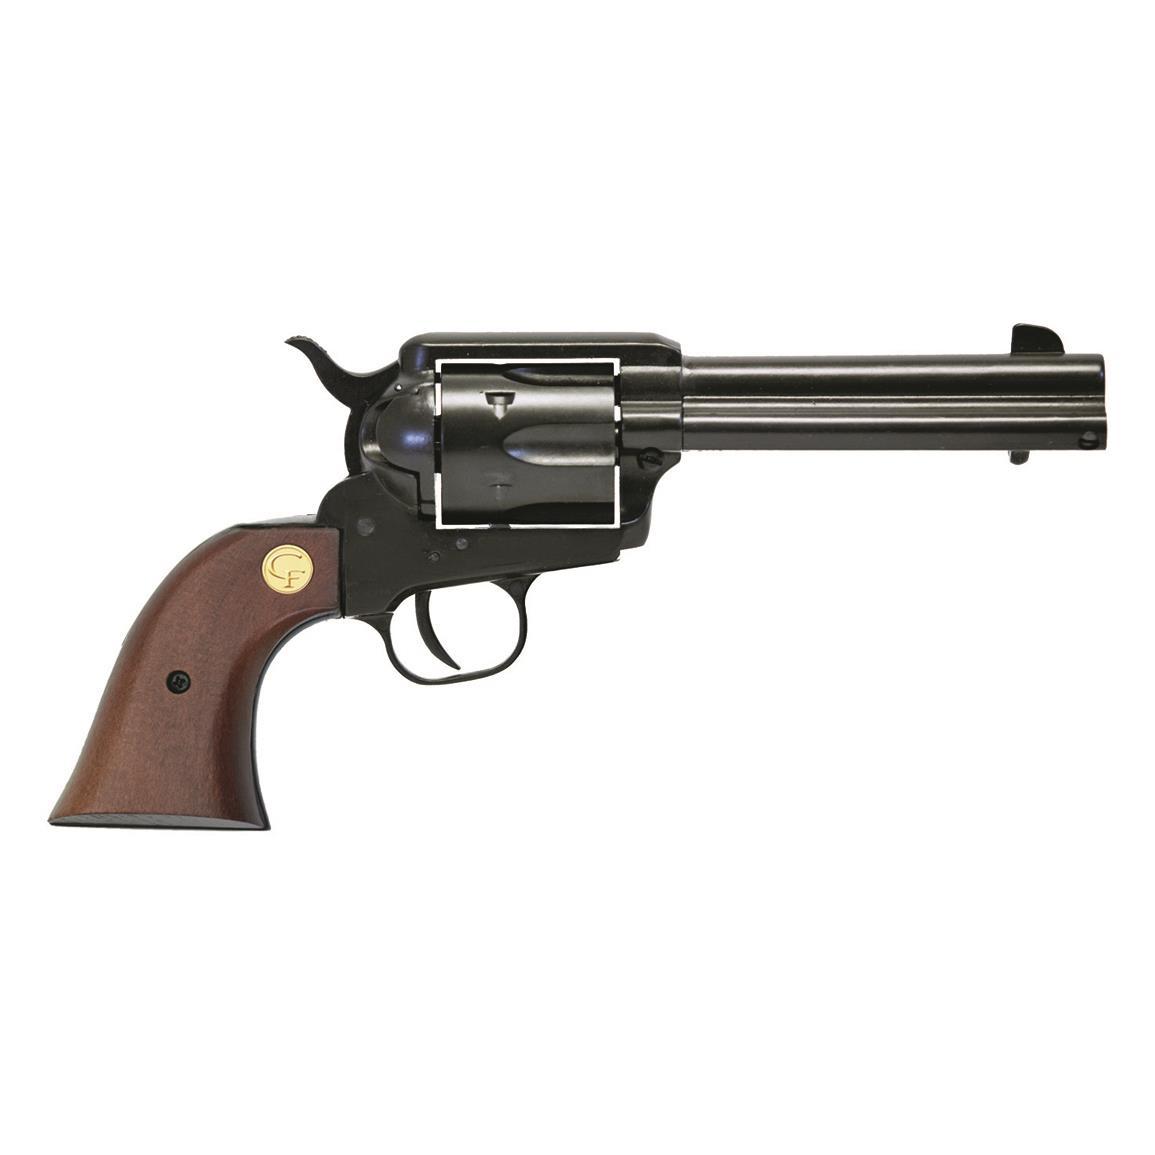 Chiappa 1873 SAA Regulato, Revolver, .38 Special, 4.75" Barrel, 6 Rounds